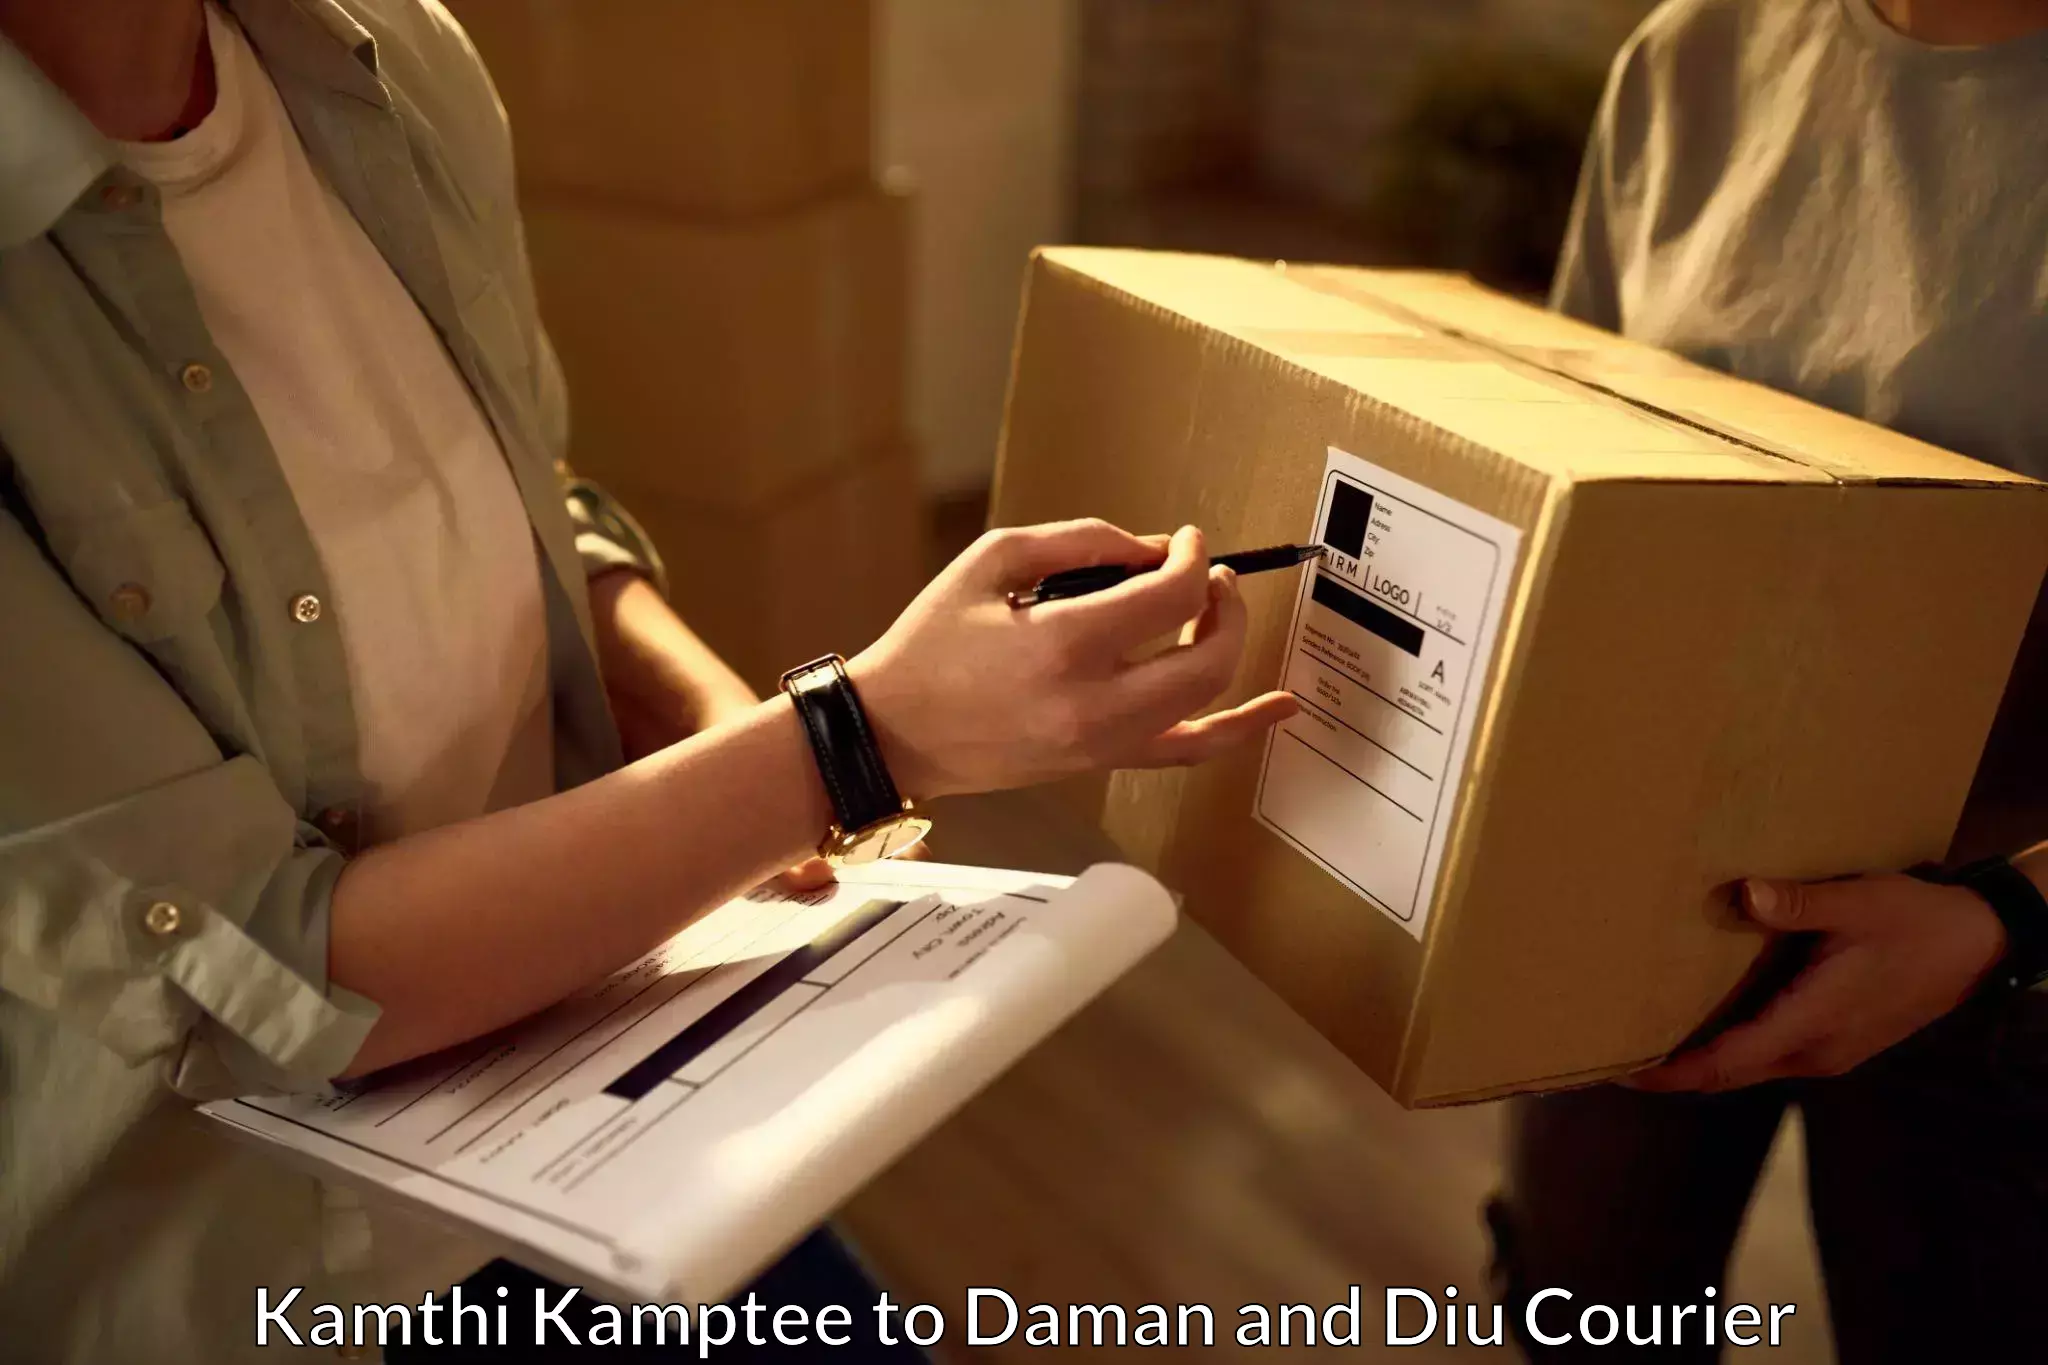 Courier service partnerships Kamthi Kamptee to Daman and Diu